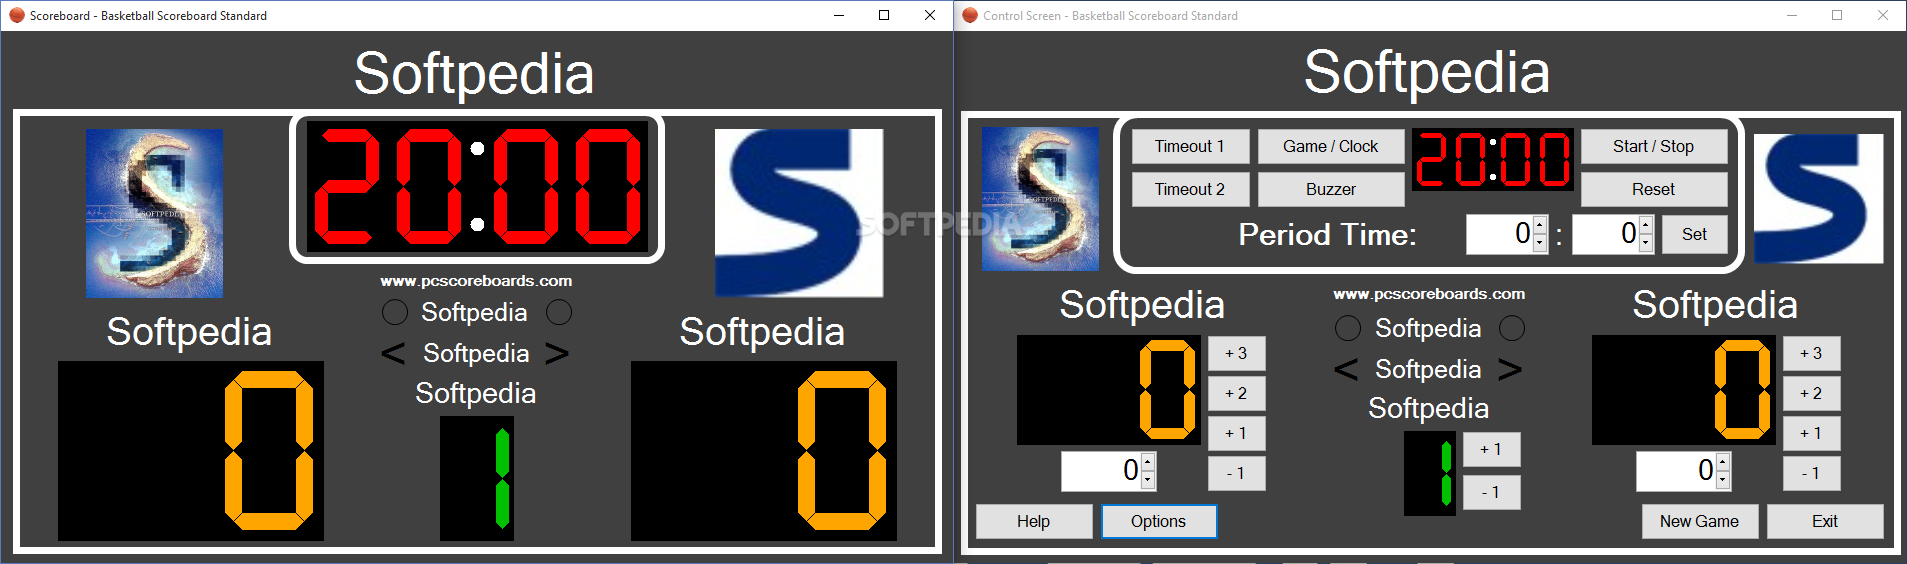 Free scoreboard app for pc